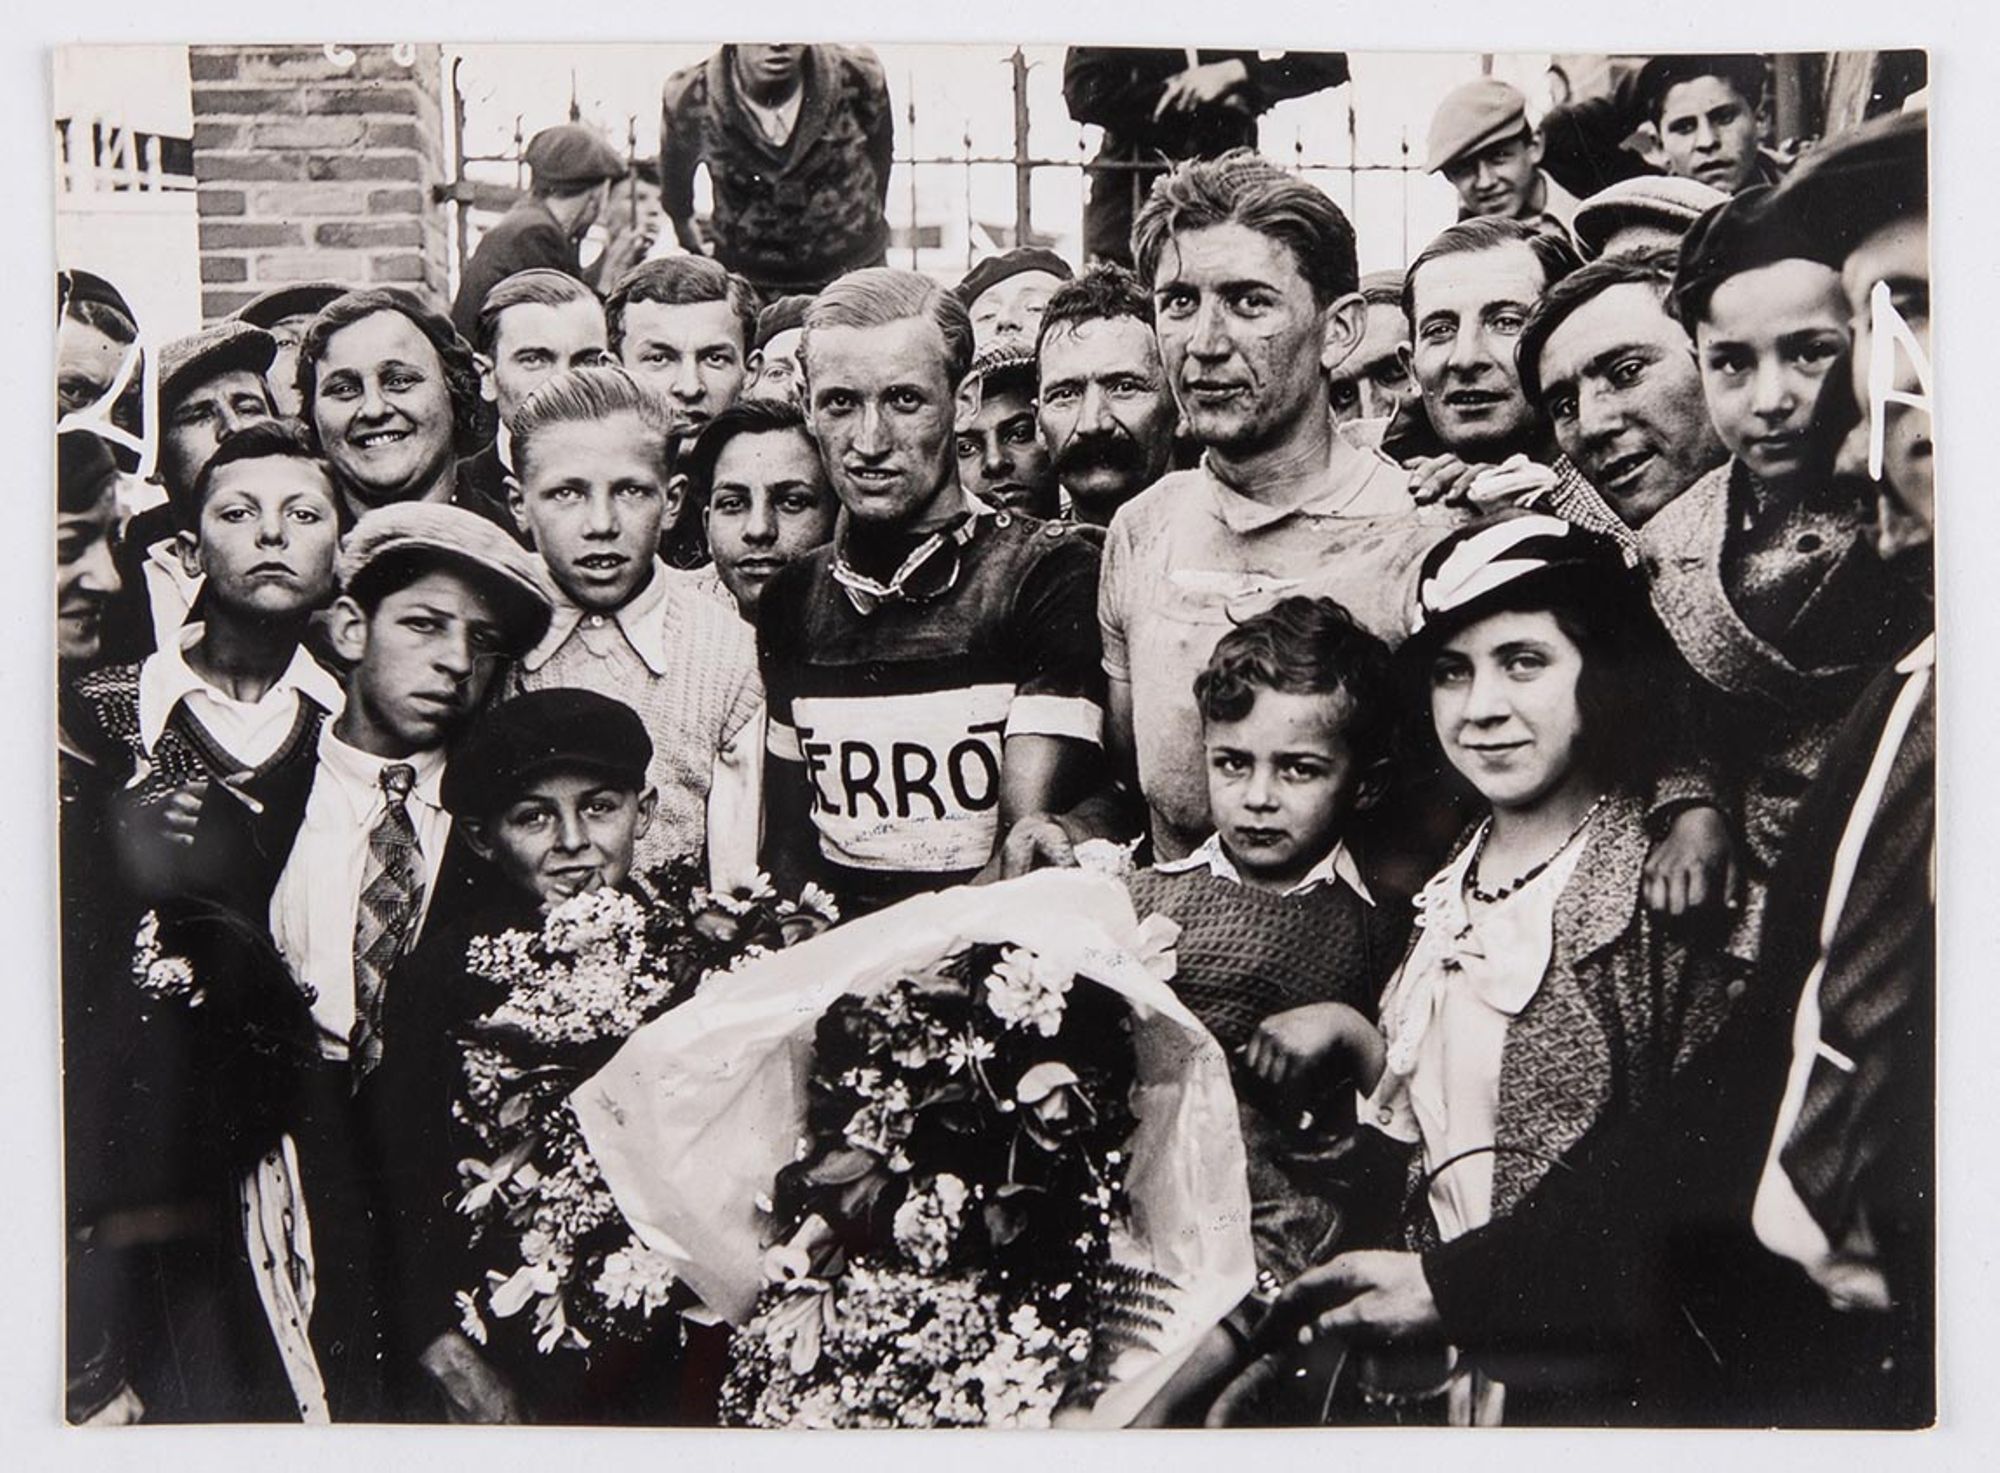 6 mai 1934. Prix Celor - huilerie industrielle de Saint-Ouen. Photographie des vainqueurs :  J. Krubs et Georges Royer posent au milieu des spectateurs. Lieu à identifier.